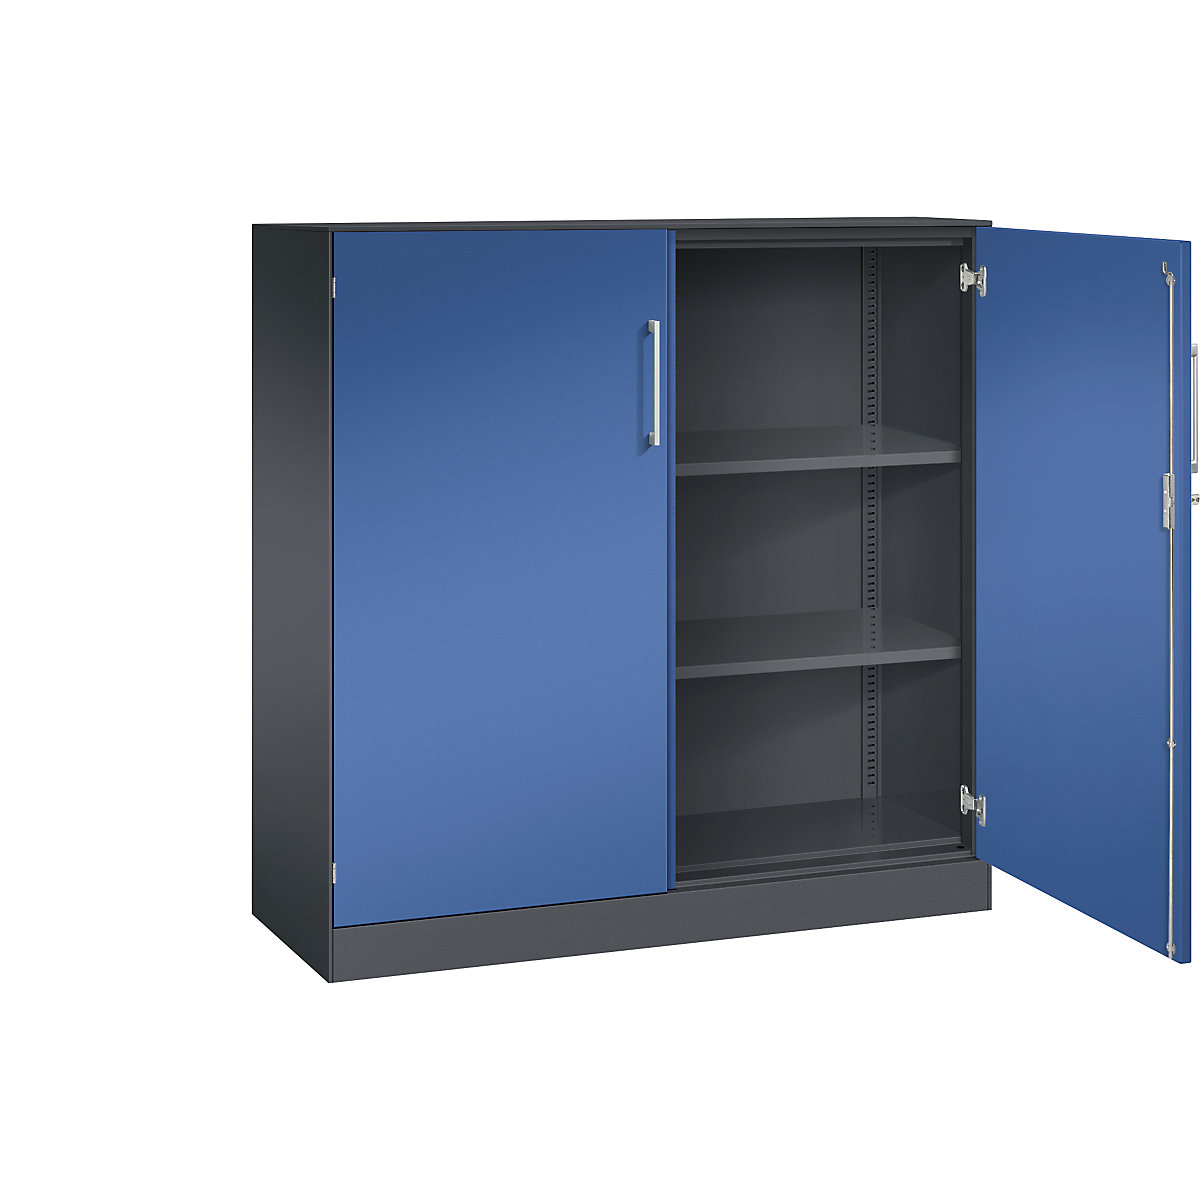 C+P – Skříň s otočnými dveřmi ASISTO, výška 1292 mm, šířka 1200 mm, 2 police, černošedá/enciánová modrá